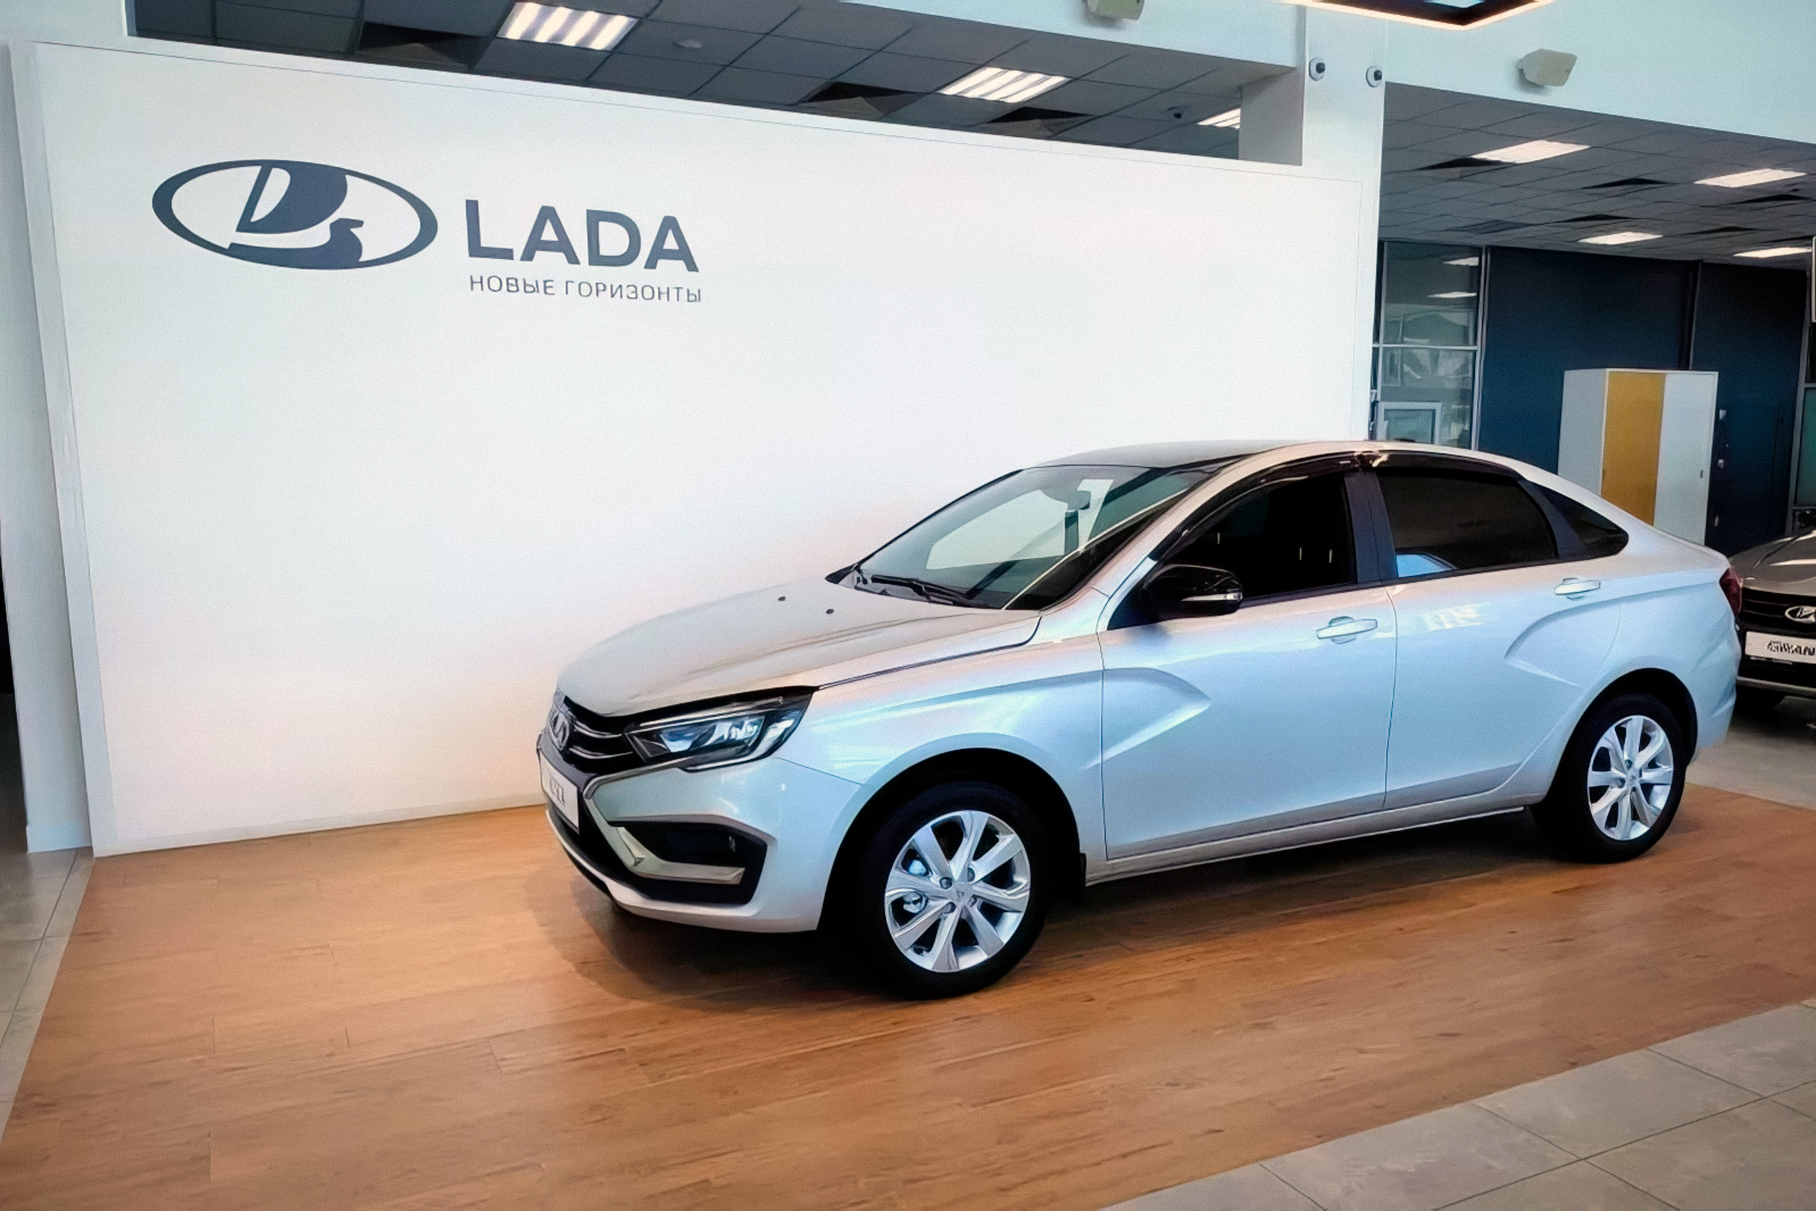 В российском автосалоне выставили на продажу Lada Vesta NG за 1 680 000 рублей